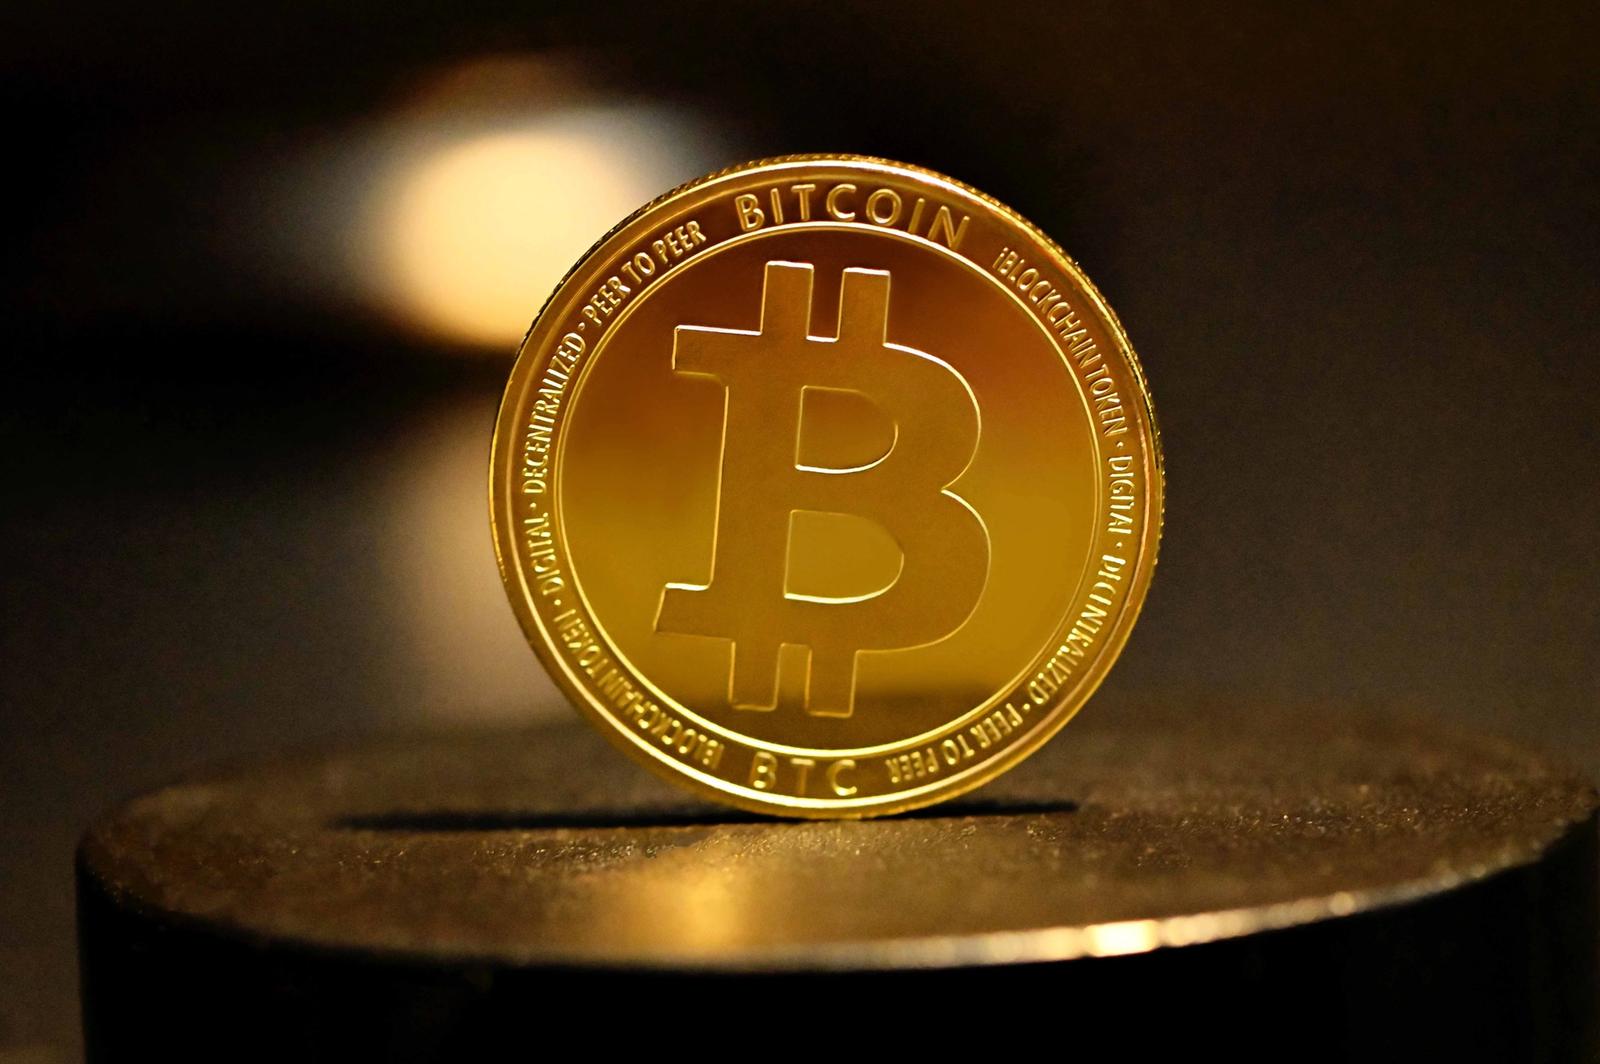 A Bitcoin token